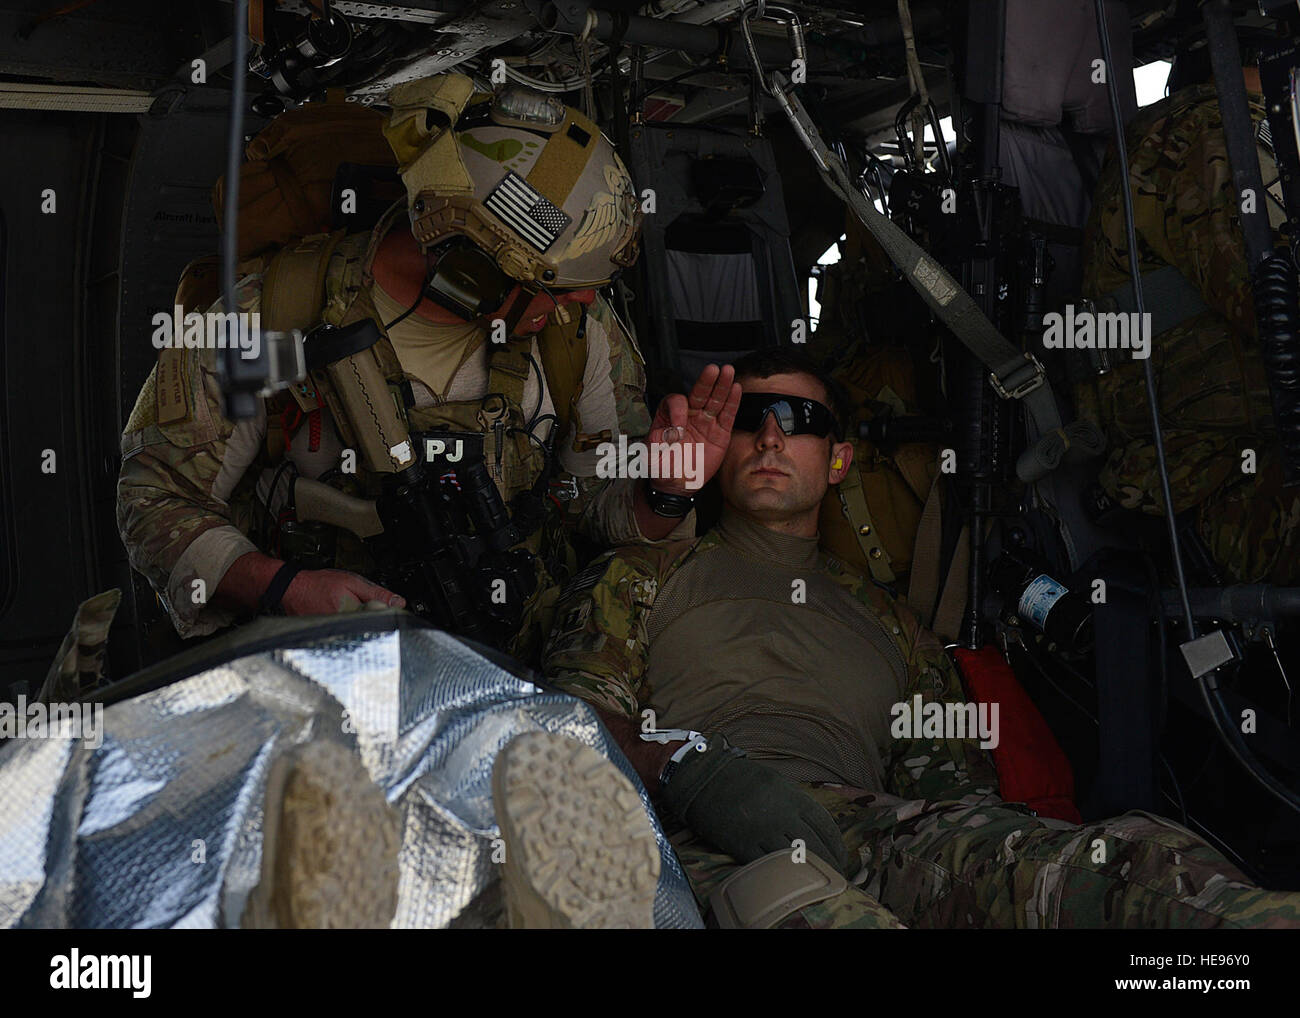 El Sargento de la Fuerza Aérea de EE.UU. Justin Tyler, 83º Escuadrón de Rescate expedicionario, 455 ala expedicionaria aérea pararescue elemento líder, trata un siniestro simulado en un HH-60G allanar Hawk helicopter en Bagram Air Field, Afganistán, 5 de mayo de 2014. El escuadrón participó en un escenario de entrenamiento donde un vehículo llamativo simulado un dispositivo explosivo improvisado. Durante la capacitación, los equipos de rescate voló sobre HH-60G allanar halcones al punto de lesión simulada, proporcionado seguridad, pacientes tratados, preparado para viajar de forma segura, y abandonaron la zona. Tyler es un nativo de Columbia, Carolina del Sur y se despliega a partir de Foto de stock